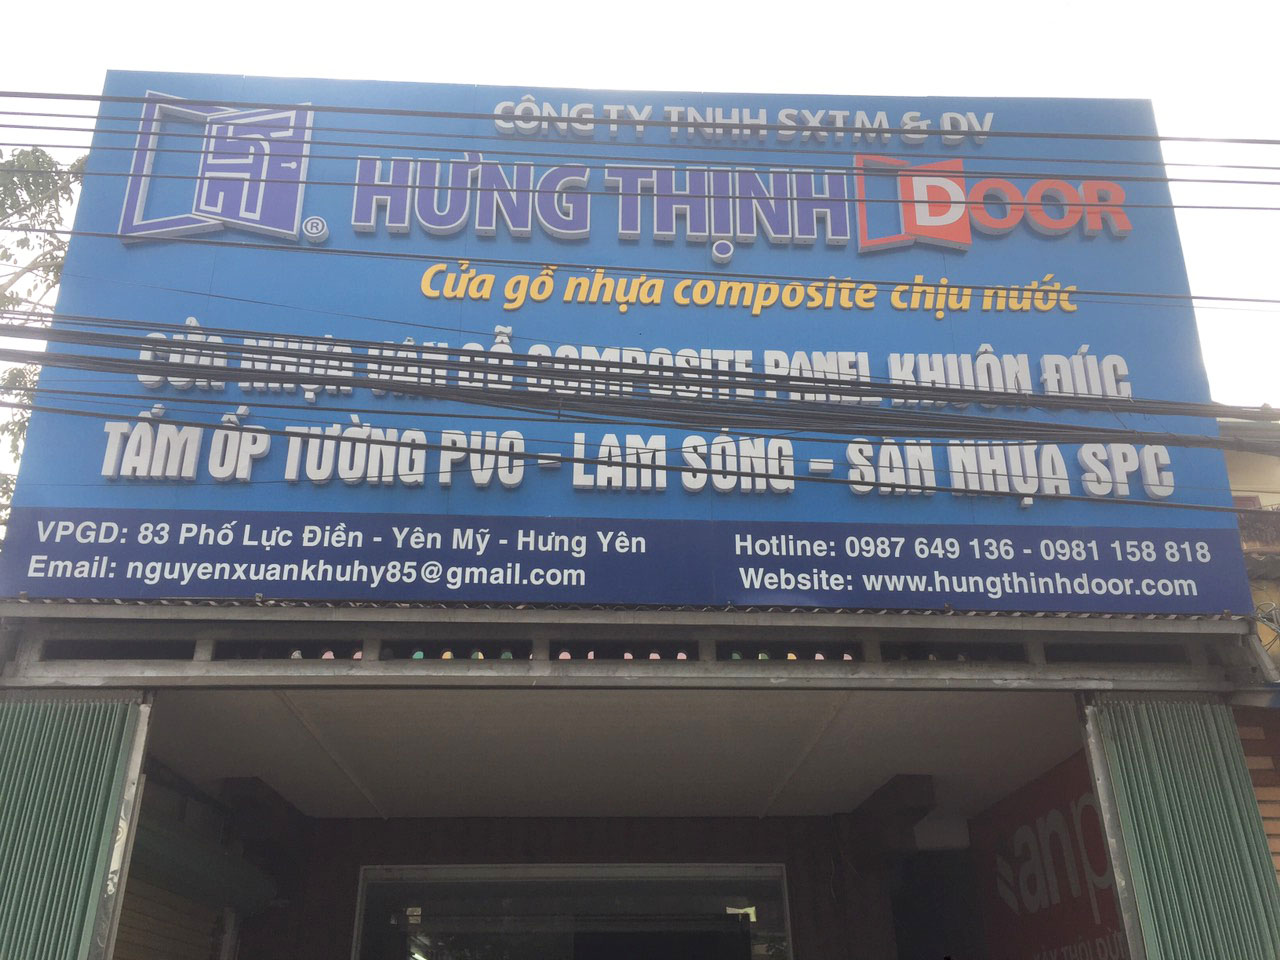 Ra mắt nhà phân phối Nhựa Trường An - Hưng Thịnh Door tại tỉnh Hưng Yên